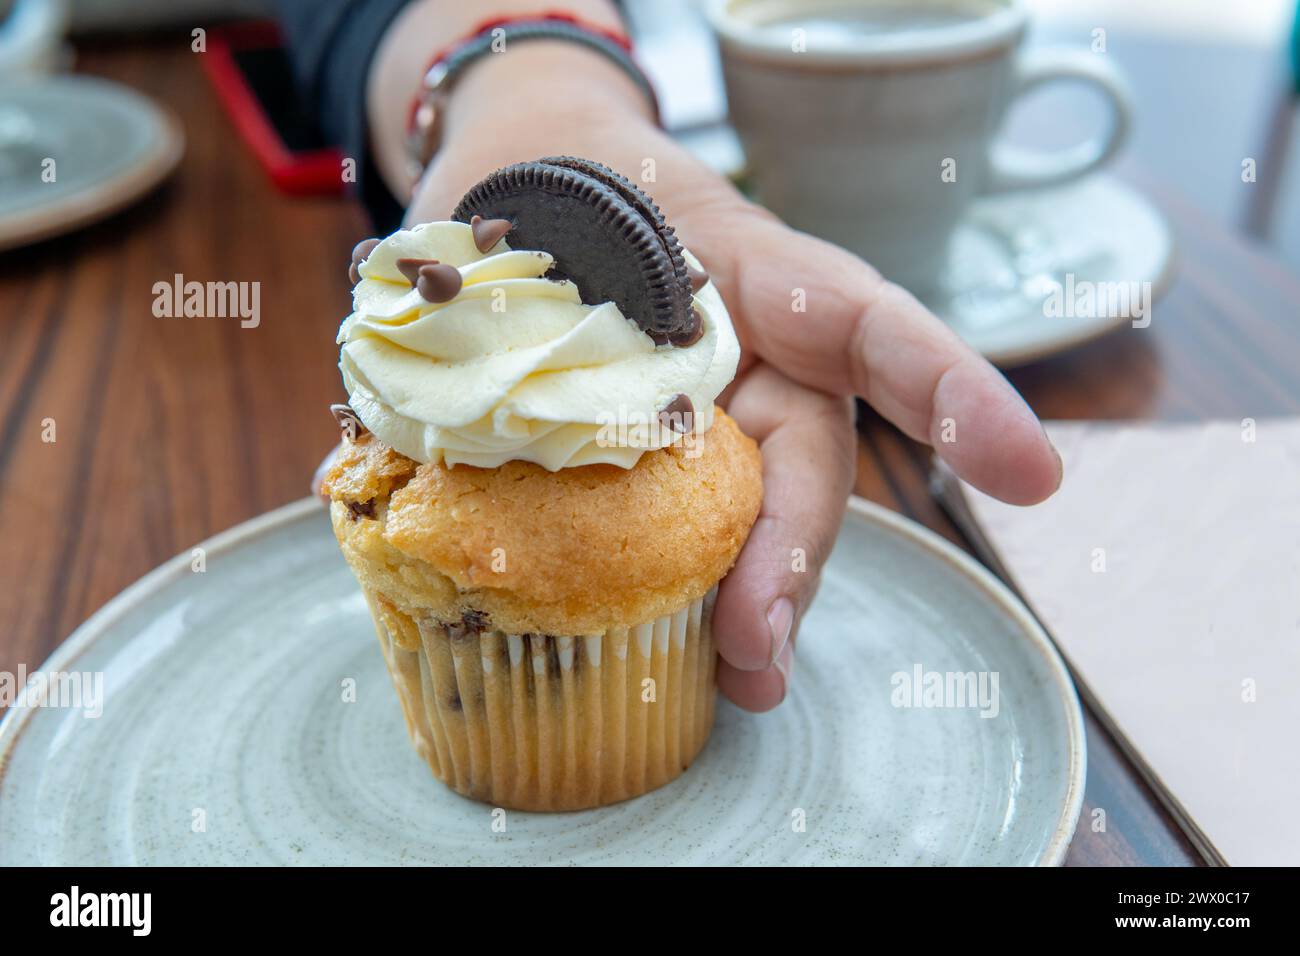 gros plan d'une main prenant un cupcake avec de la crème, des gouttes de chocolat et un cookie sur une table Banque D'Images